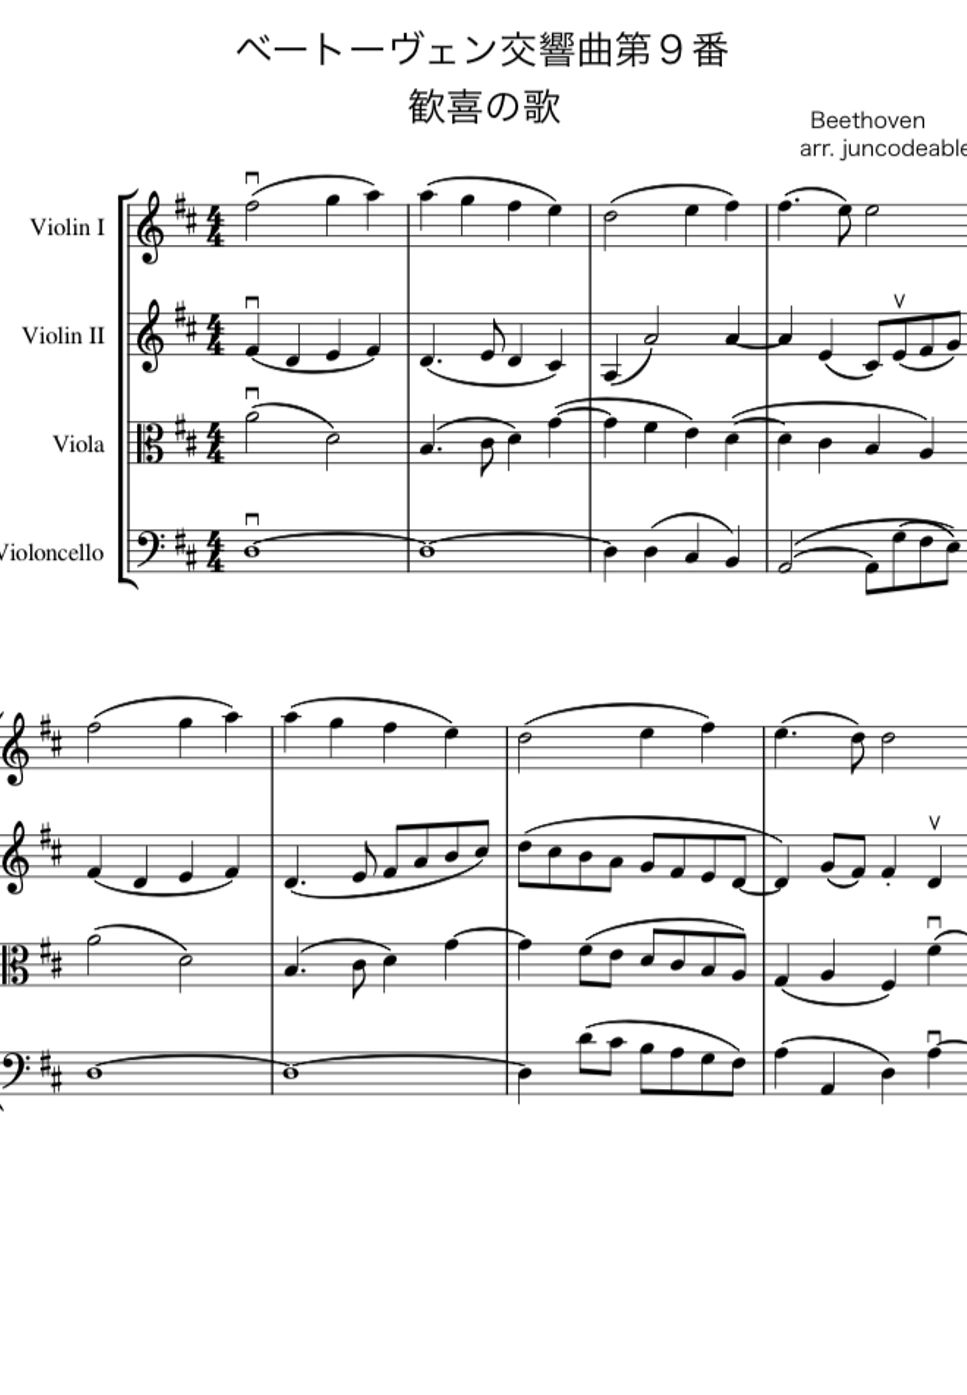 ベートーヴェン - 第九「歓喜の歌」 (弦楽合奏) by arr. juncodeable